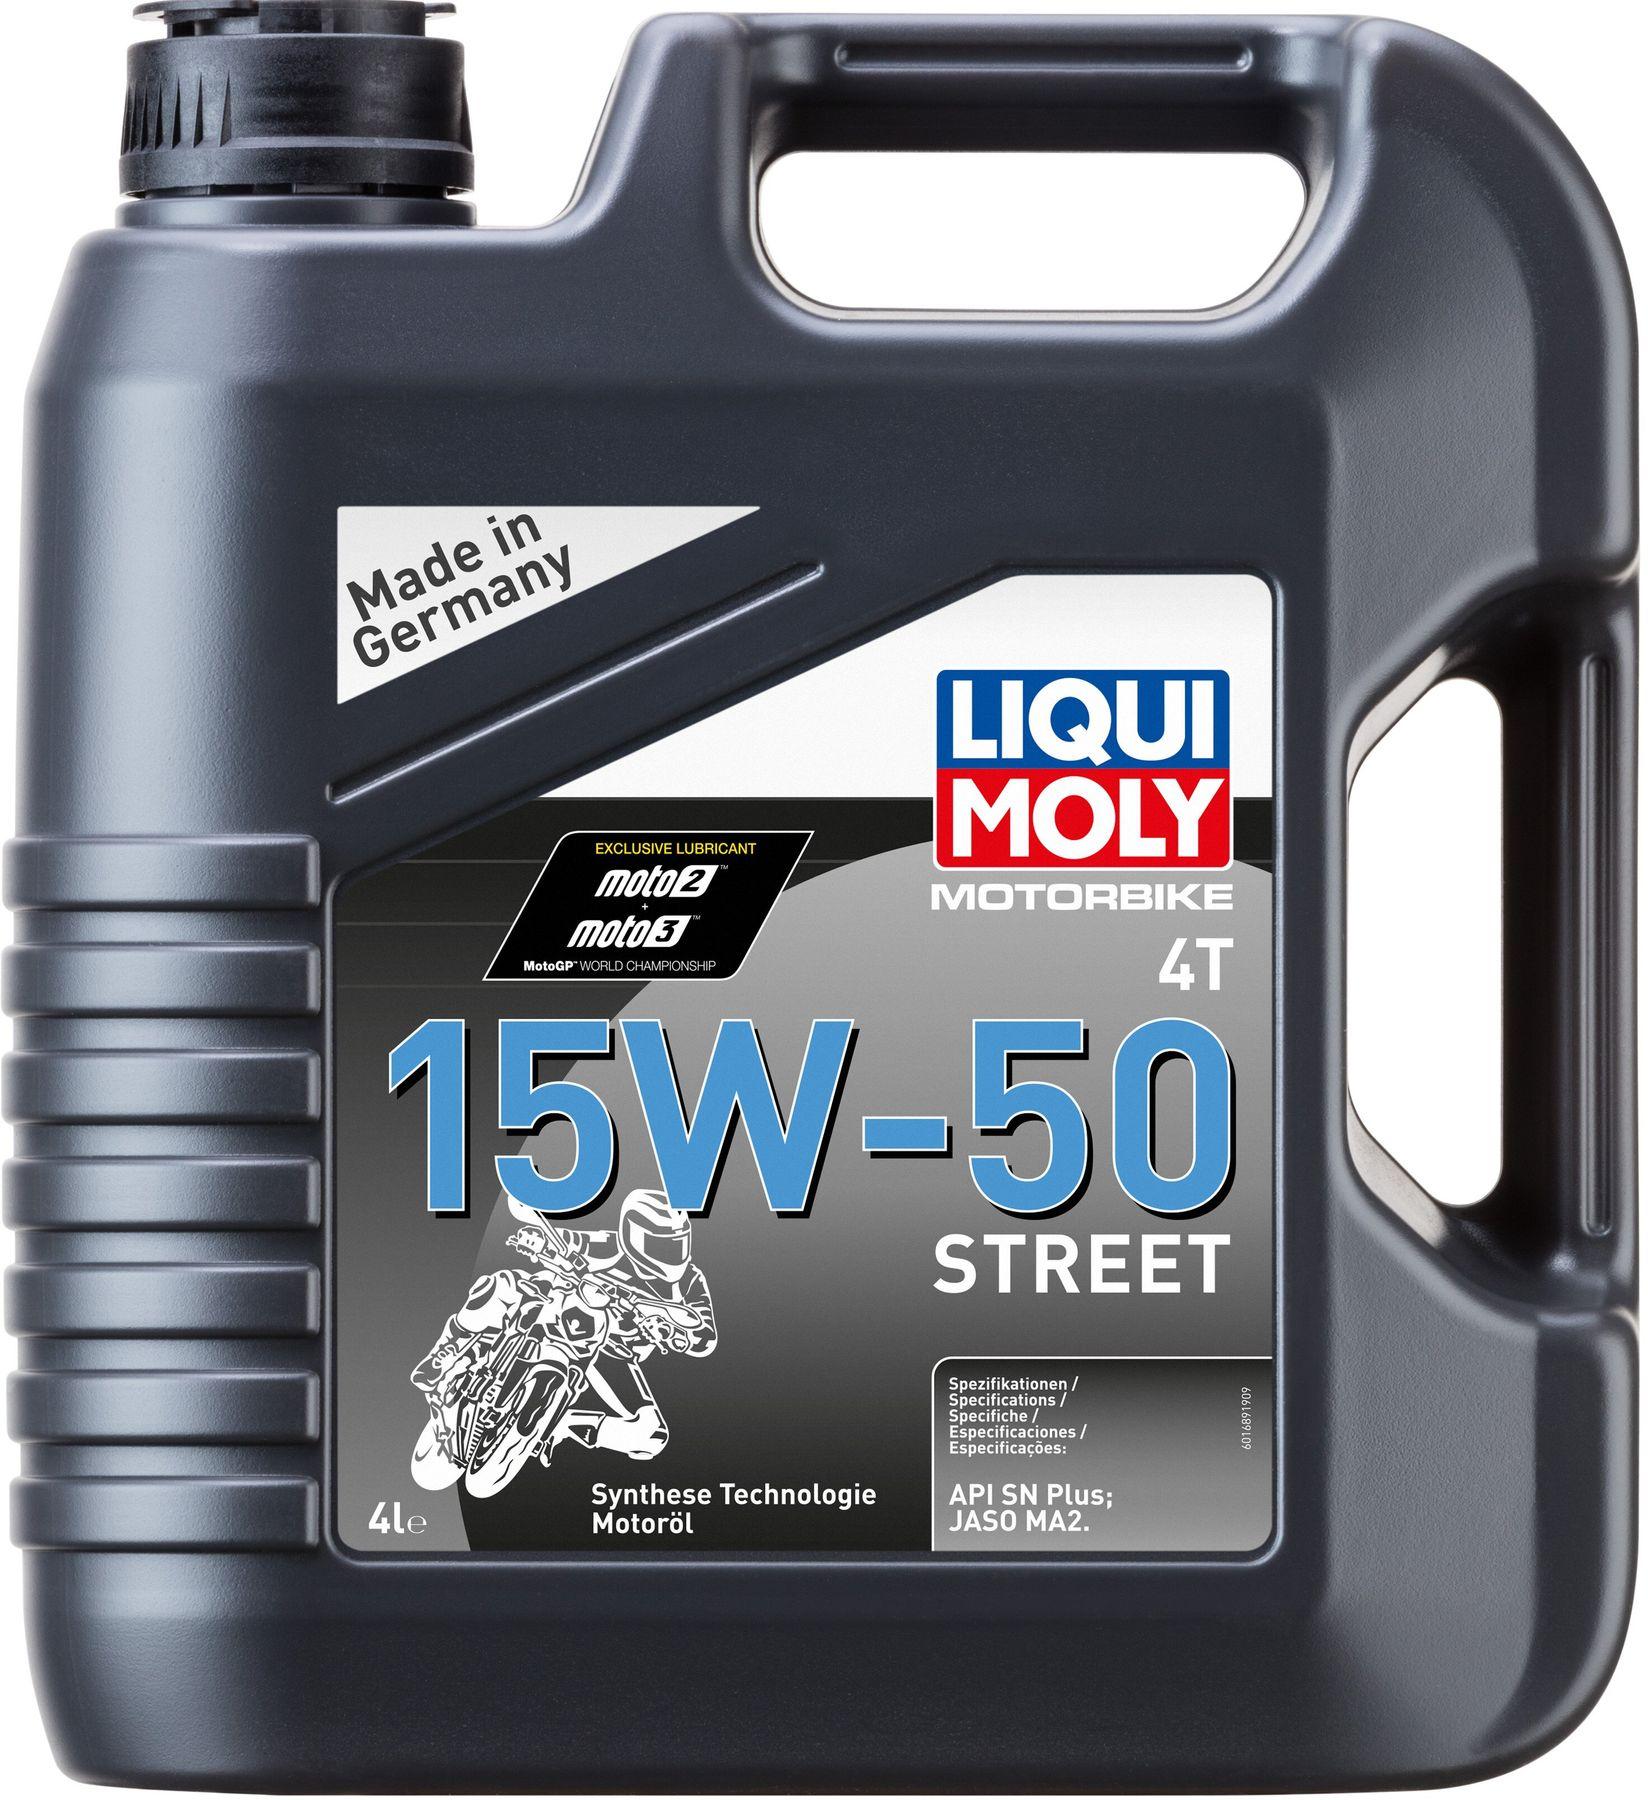 Моторное масло Liqui Moly Motorbike 4T 15W-50 Street, 4 литра (1689)